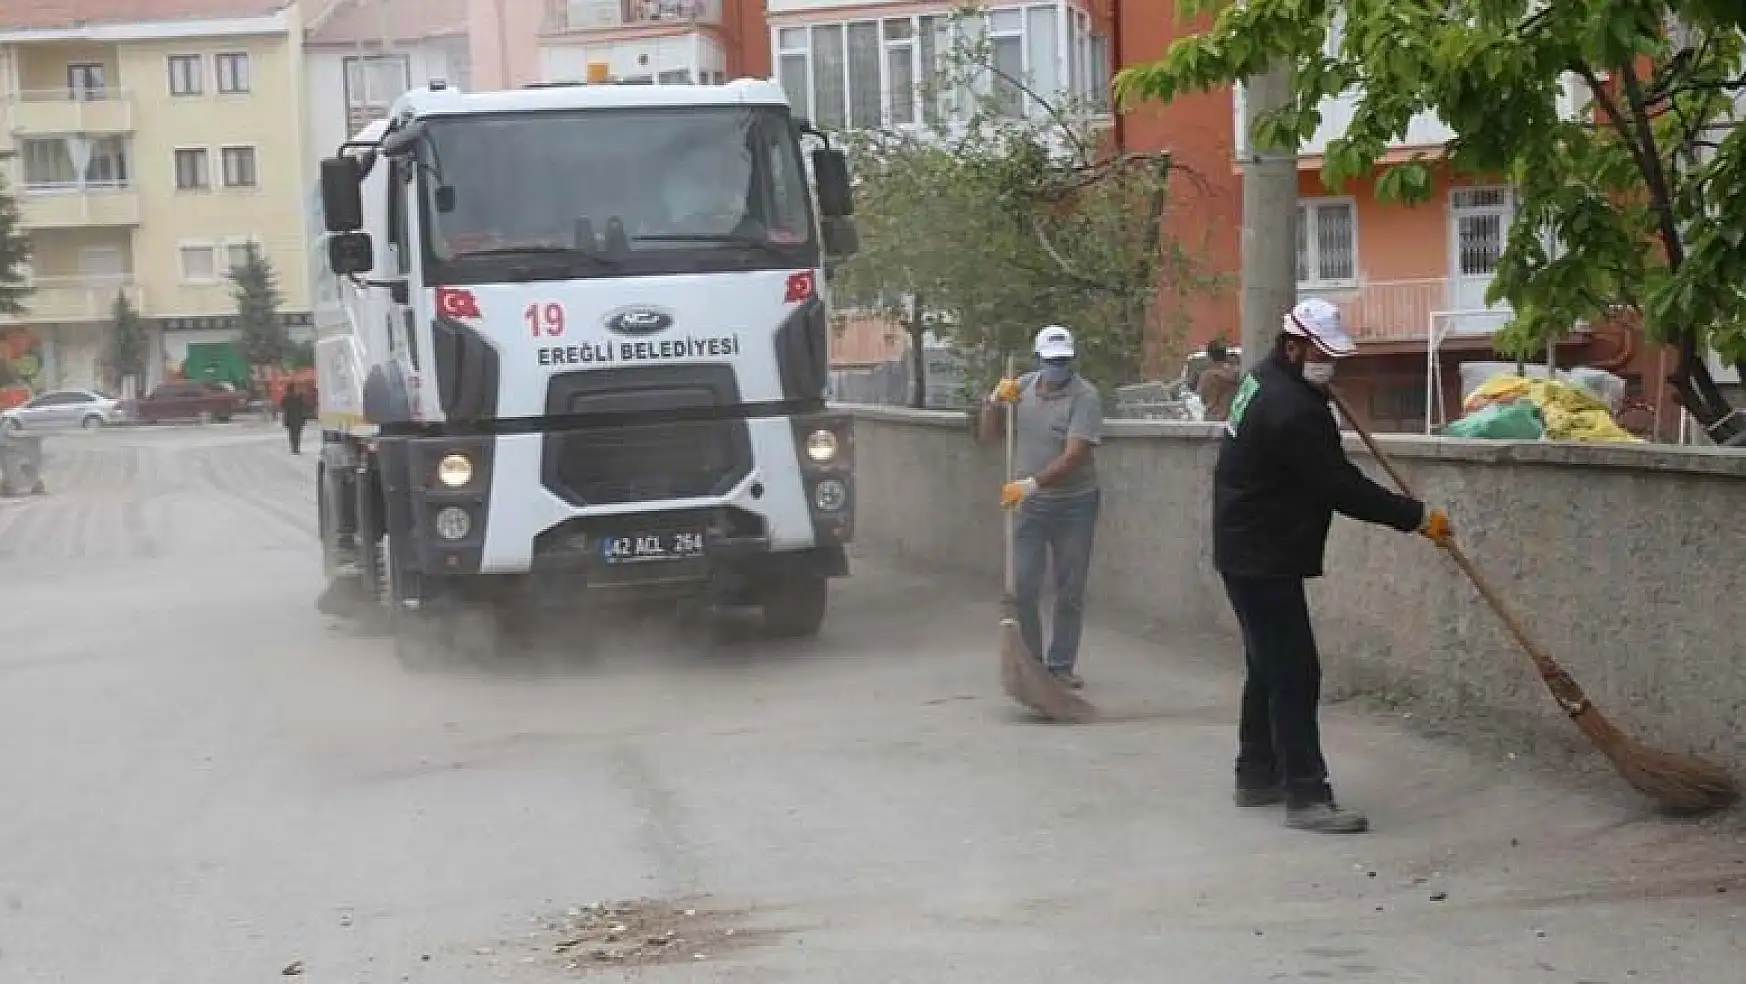 Konya'nın Ereğli İlçe Belediyesi'nden bayram temizliği